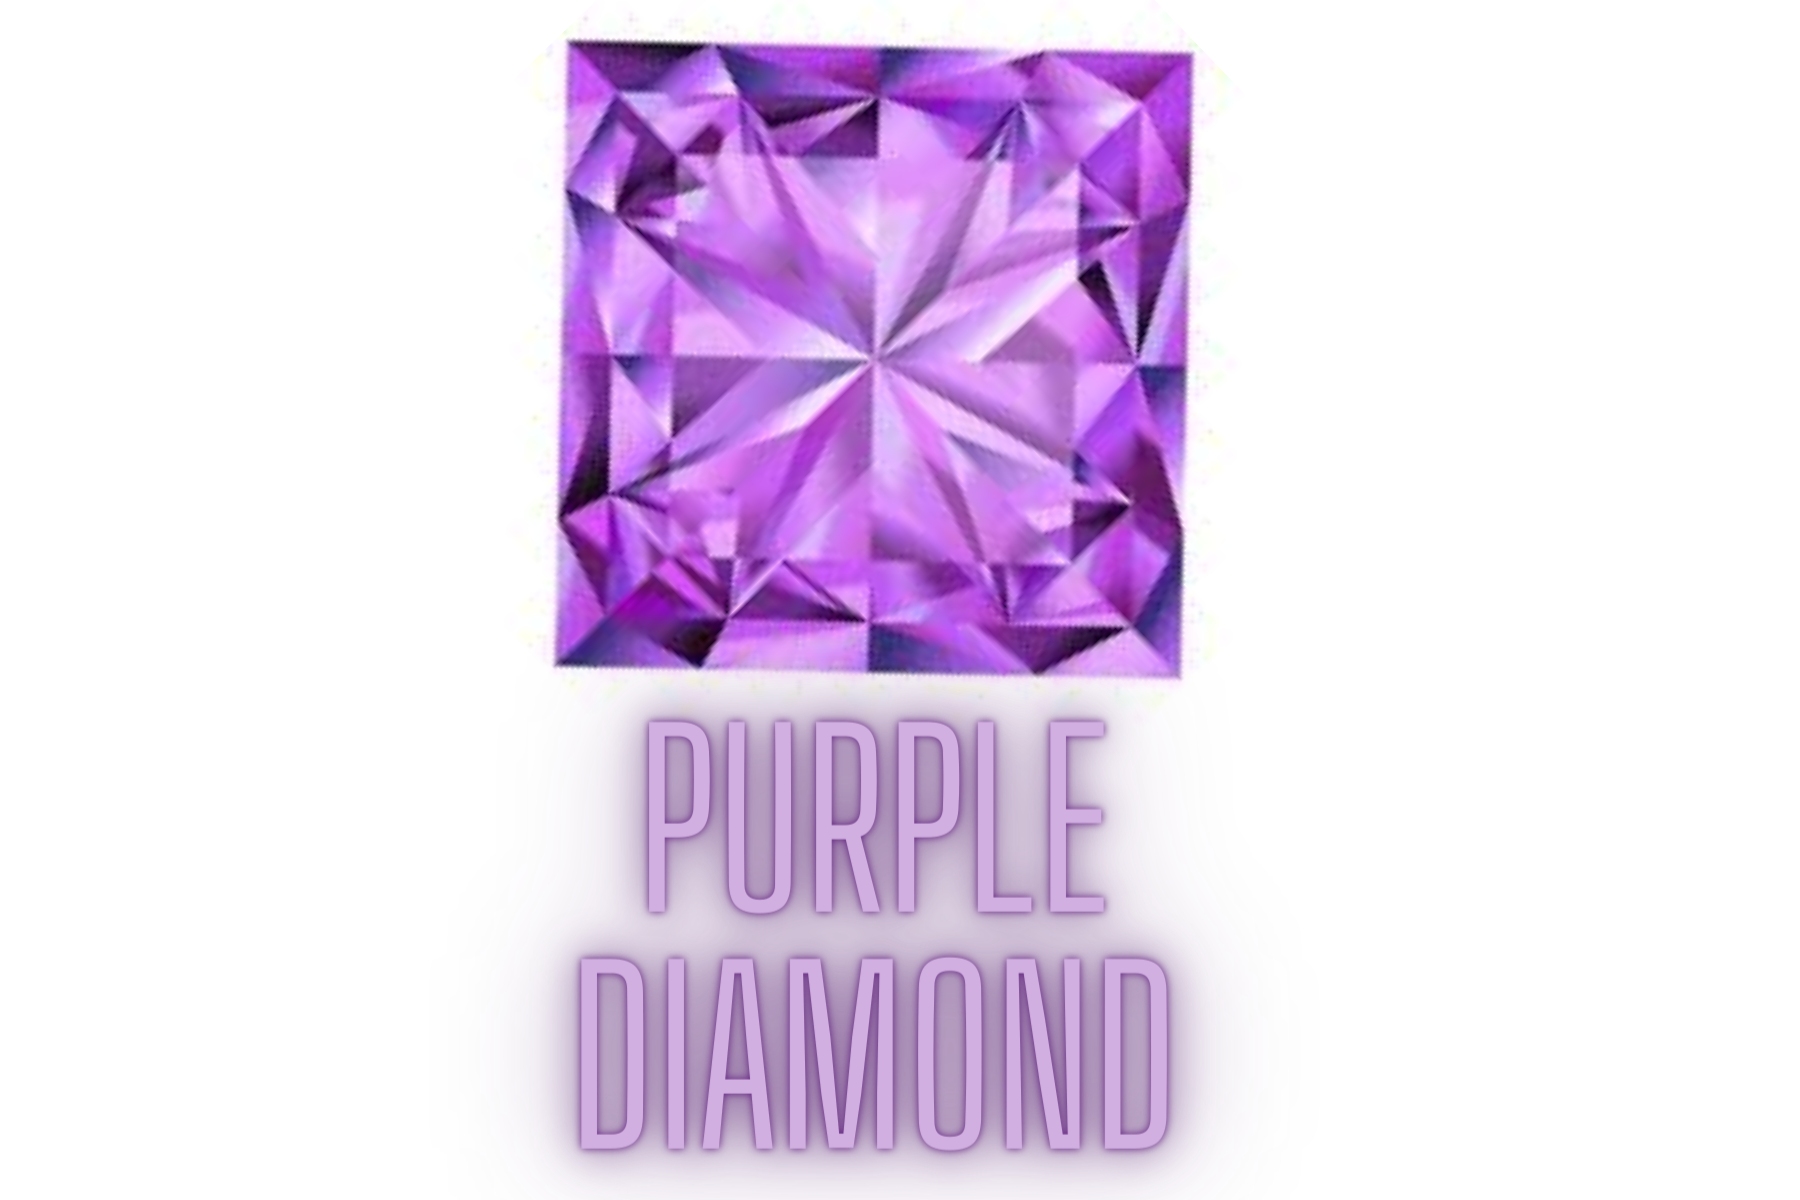 Square purple diamond stone